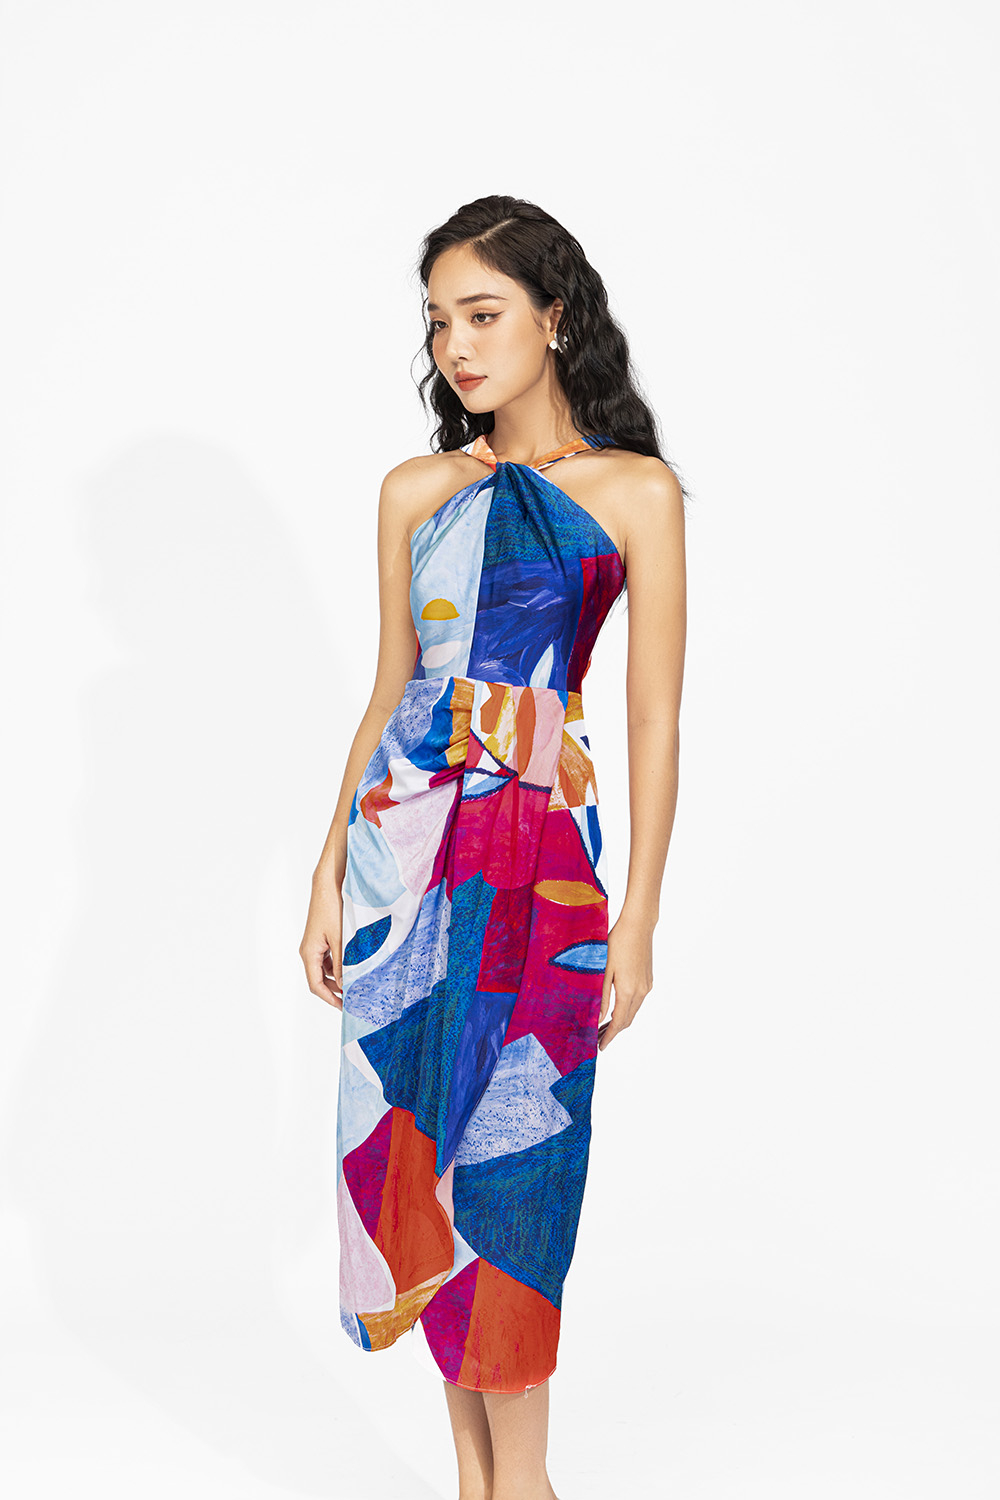 Đập tan nóng hè từ mẫu váy maxi đẹp cùng thời trang H&T – Thoitranght.com.vn